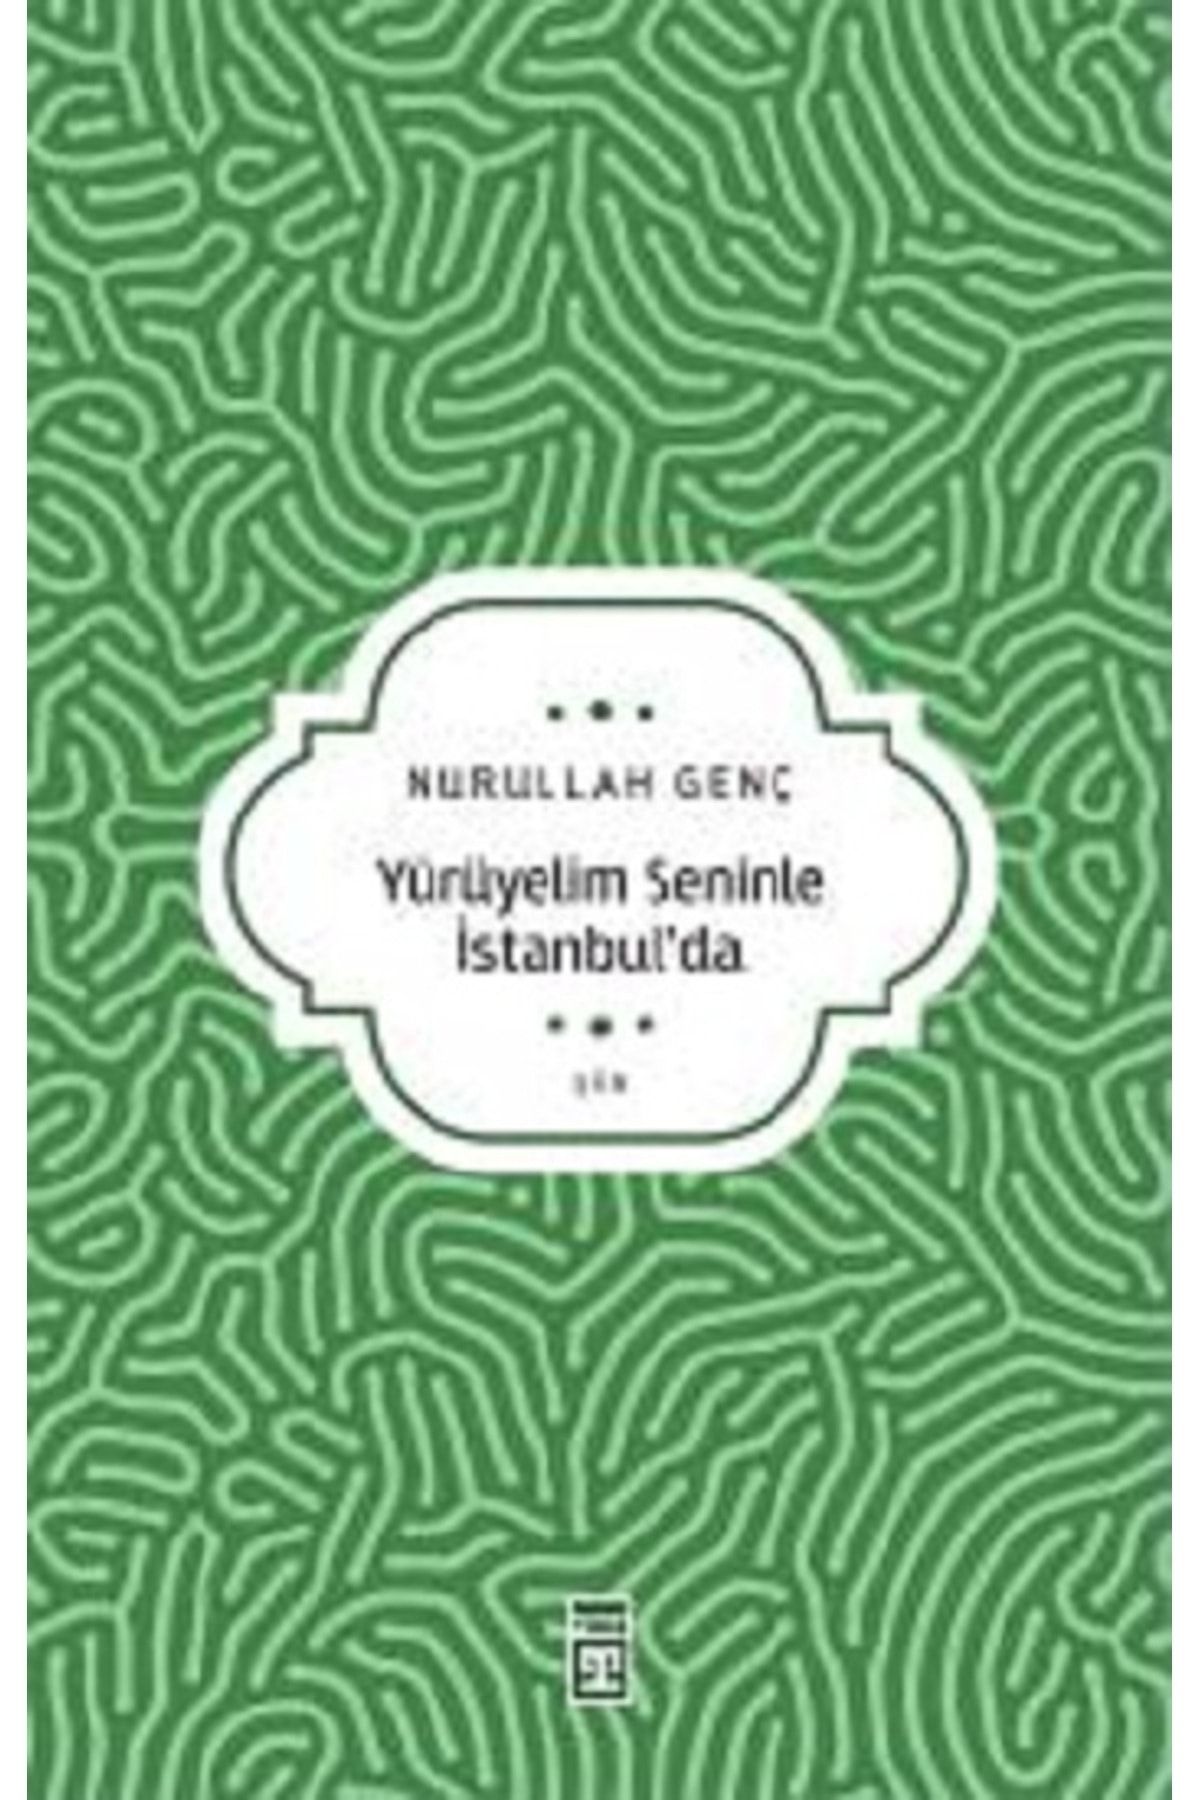 Timaş Yayınları Yürüyelim Seninle İstanbul’da kitabı / Nurullah Genç / Timaş Yayınları